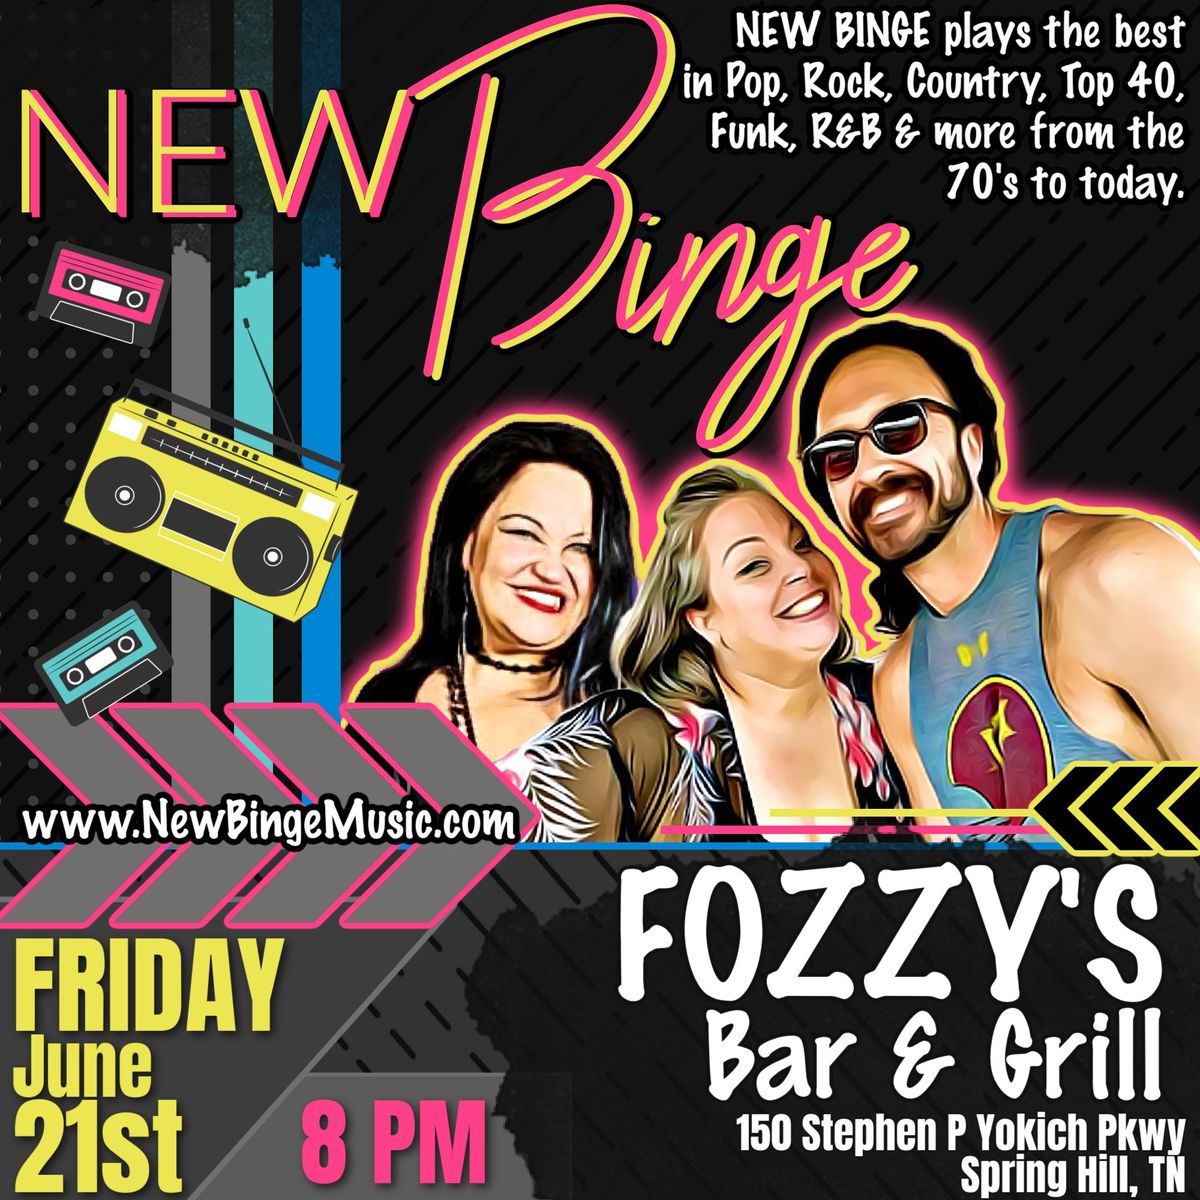 New Binge LIVE at Fozzy's